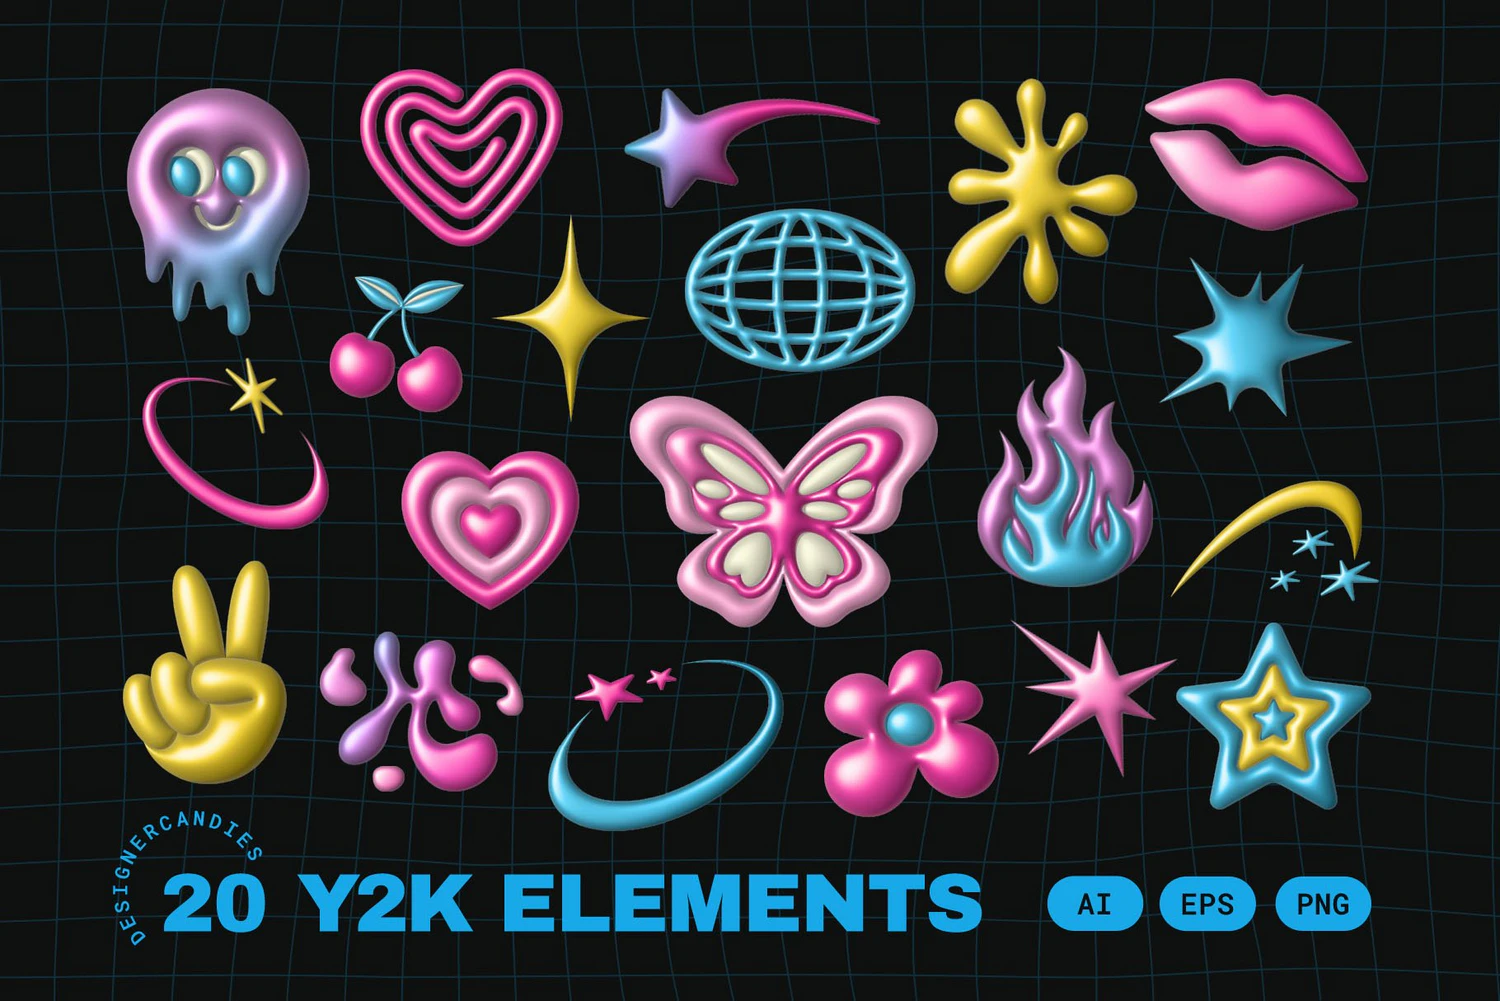 4816 20款复古Y2K渐变3D爱心火焰星芒logo图标徽标AI膨胀矢量源文件套装Y2K Elements Set@GOOODME.COM